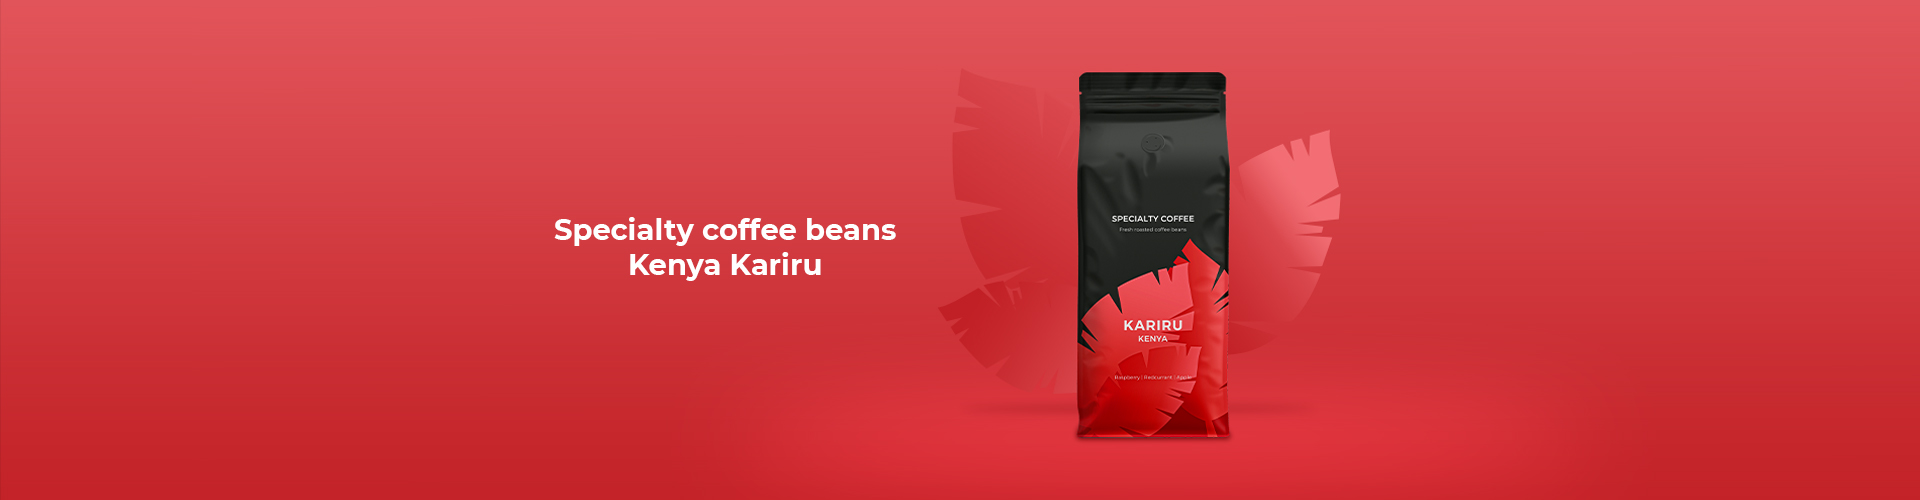 Specialty coffee beans Kenya Kariru